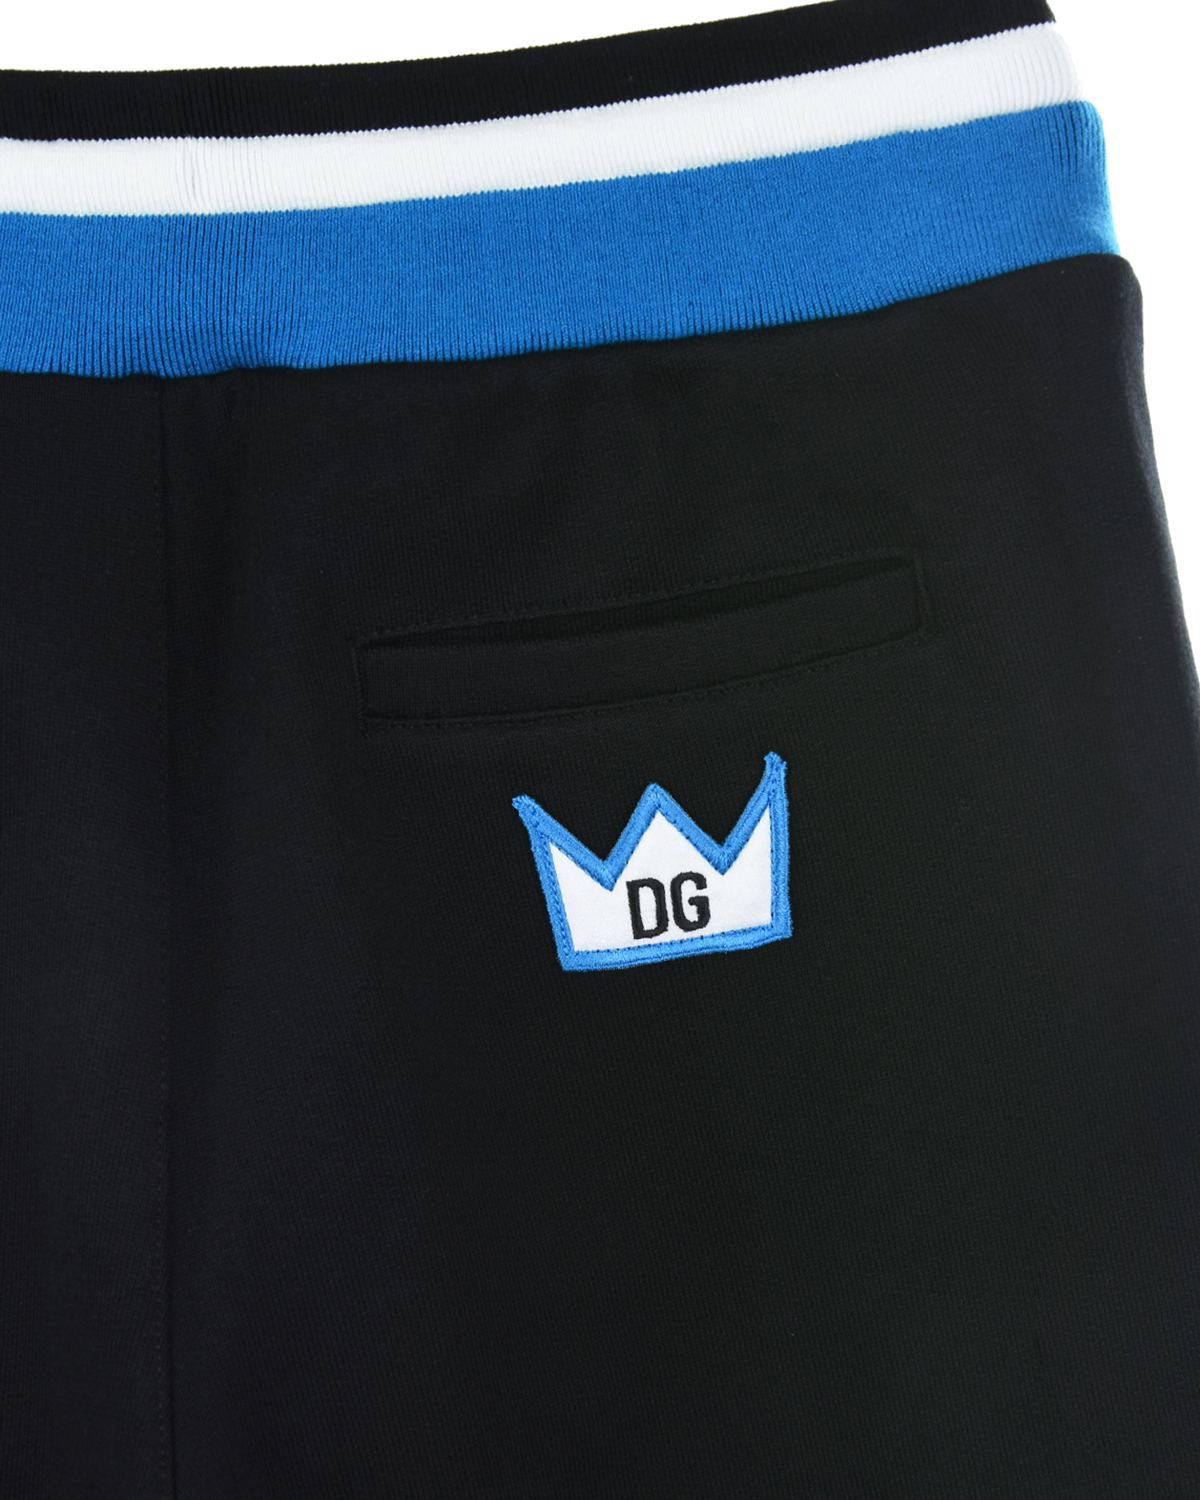 Спортивные брюки со зведочками на лампасах Dolce&Gabbana детские, размер 116, цвет синий - фото 5